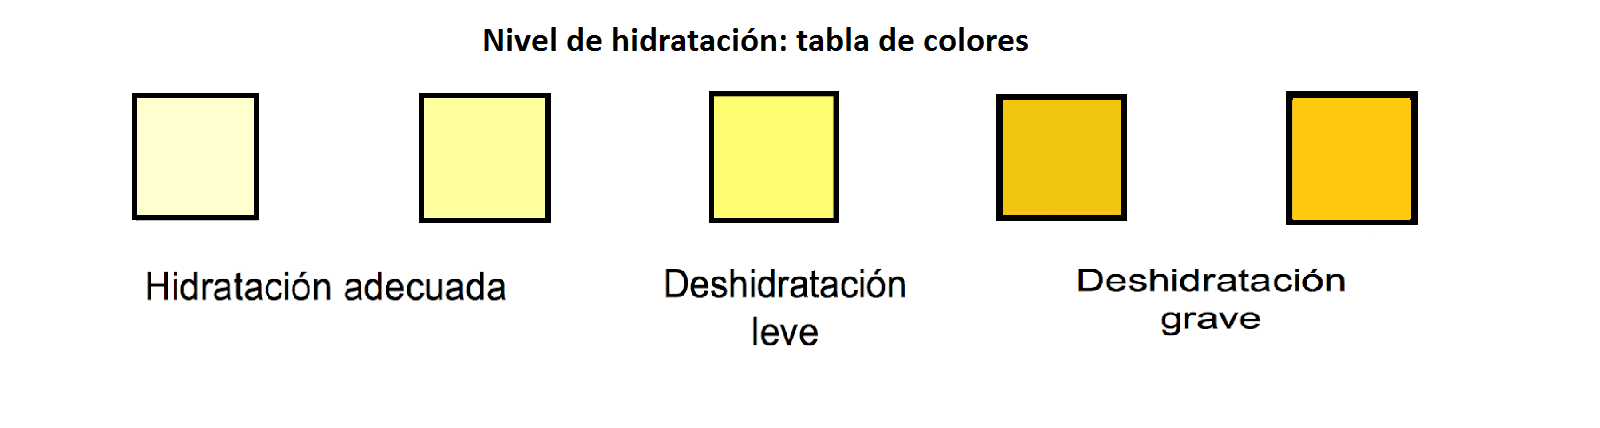 Resultado de imagen de color orina hidratacion